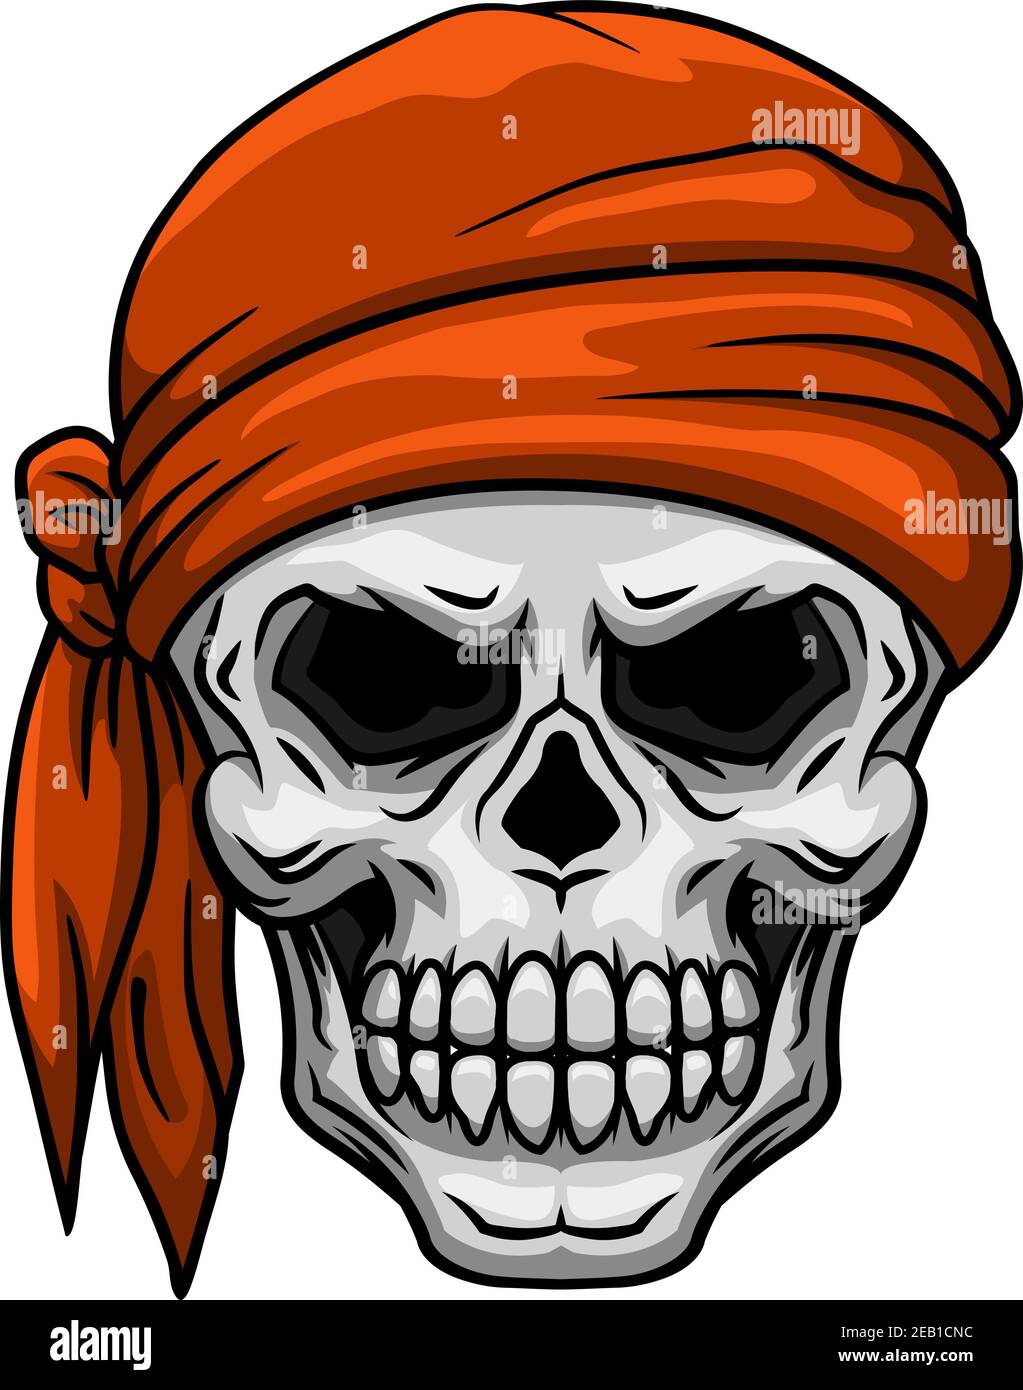 Crâne de bande dessinée effrayant dans le bandana orange ou le mouchoir pour tatouage, bandes dessinées ou halloween partie design Illustration de Vecteur